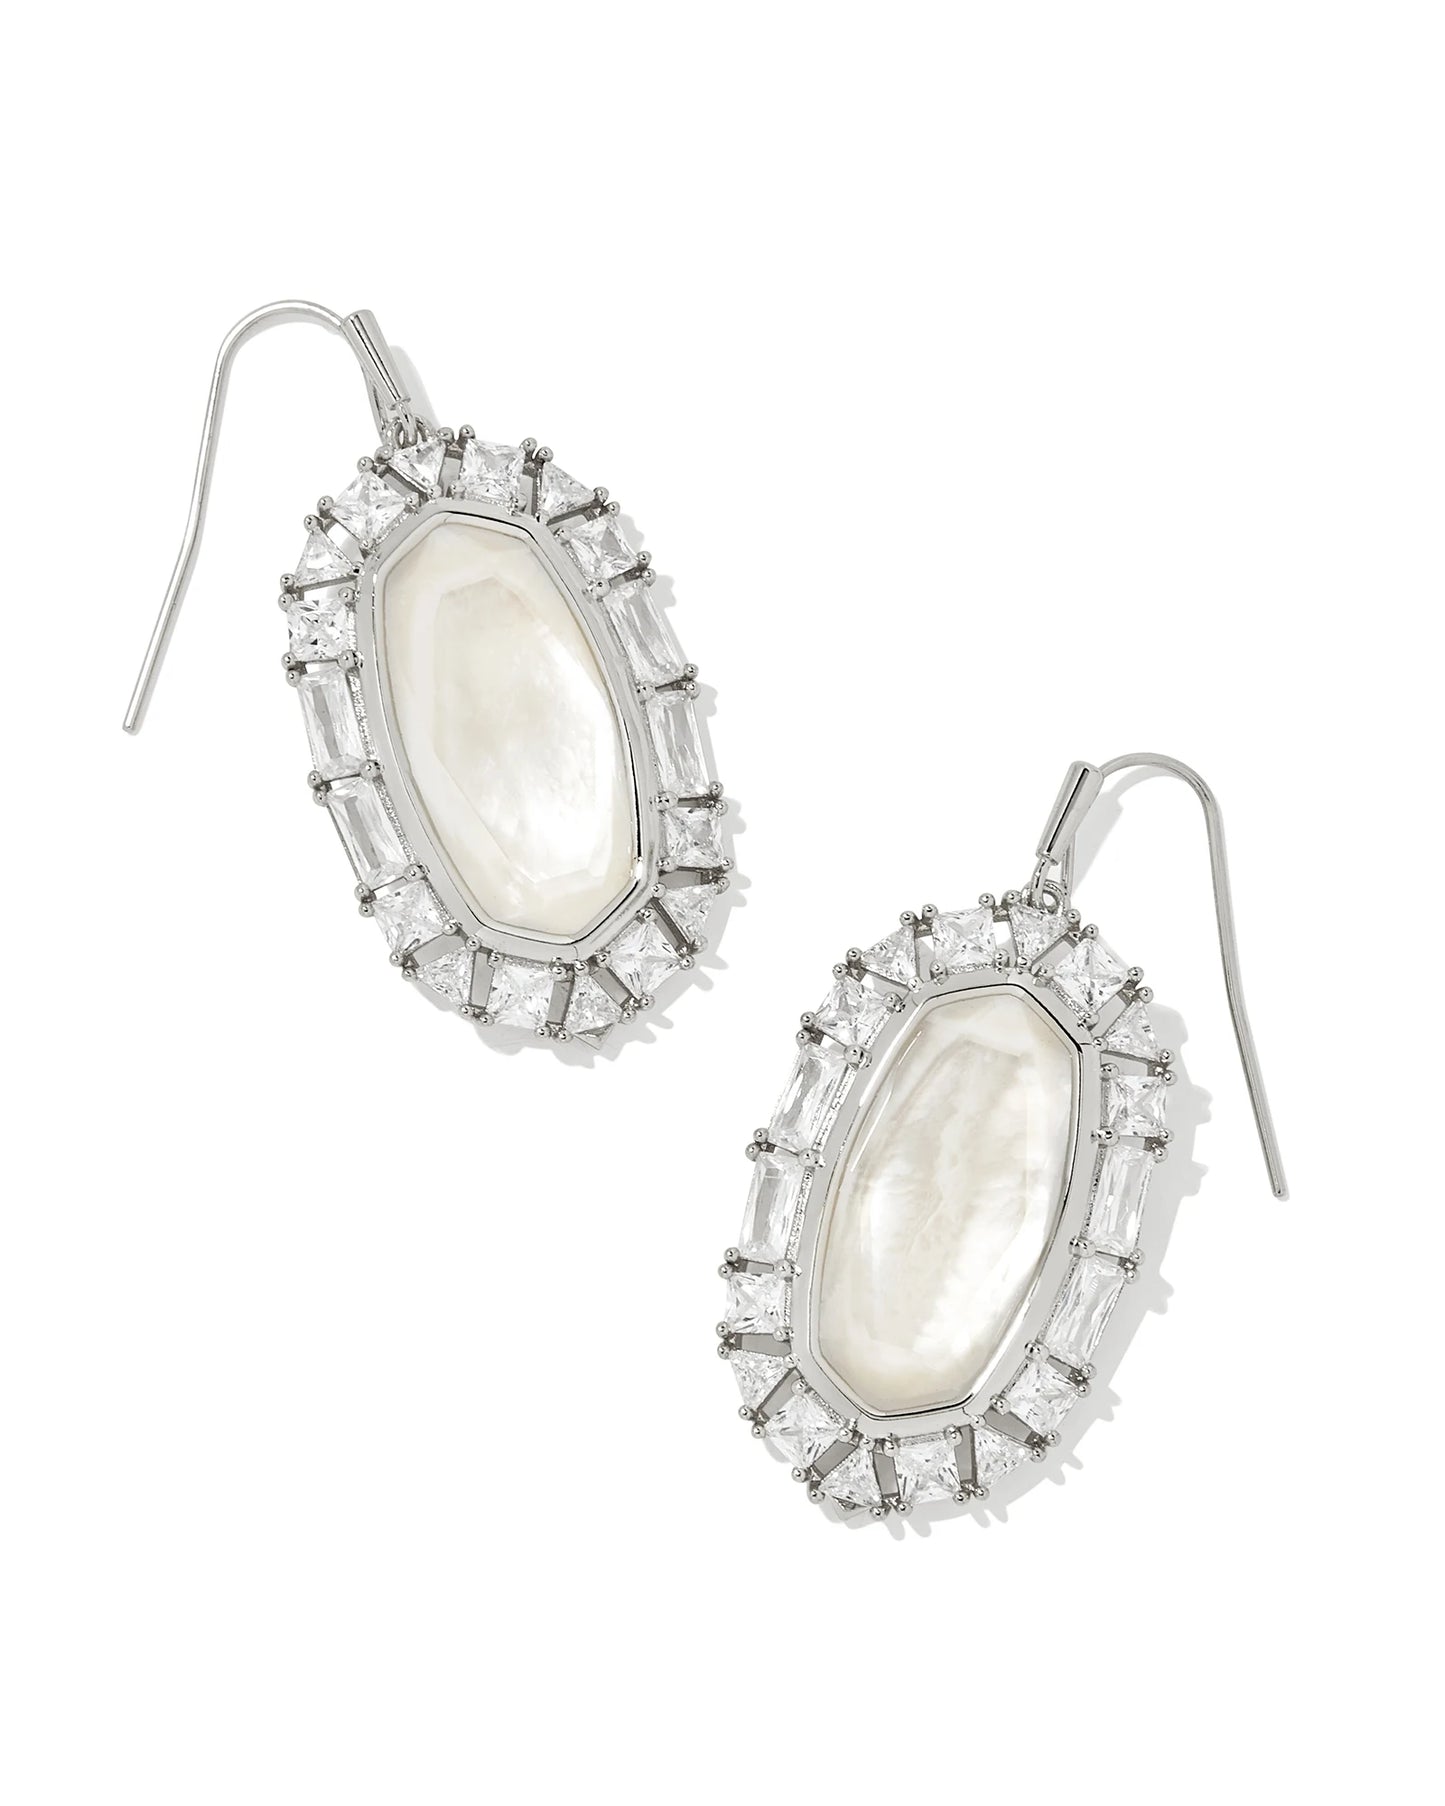 Kendra Scott Elle Crystal Frame Drop Earrings Silver Ivory Mother of Pearl-Earrings-Kendra Scott-E00249RHD-The Twisted Chandelier